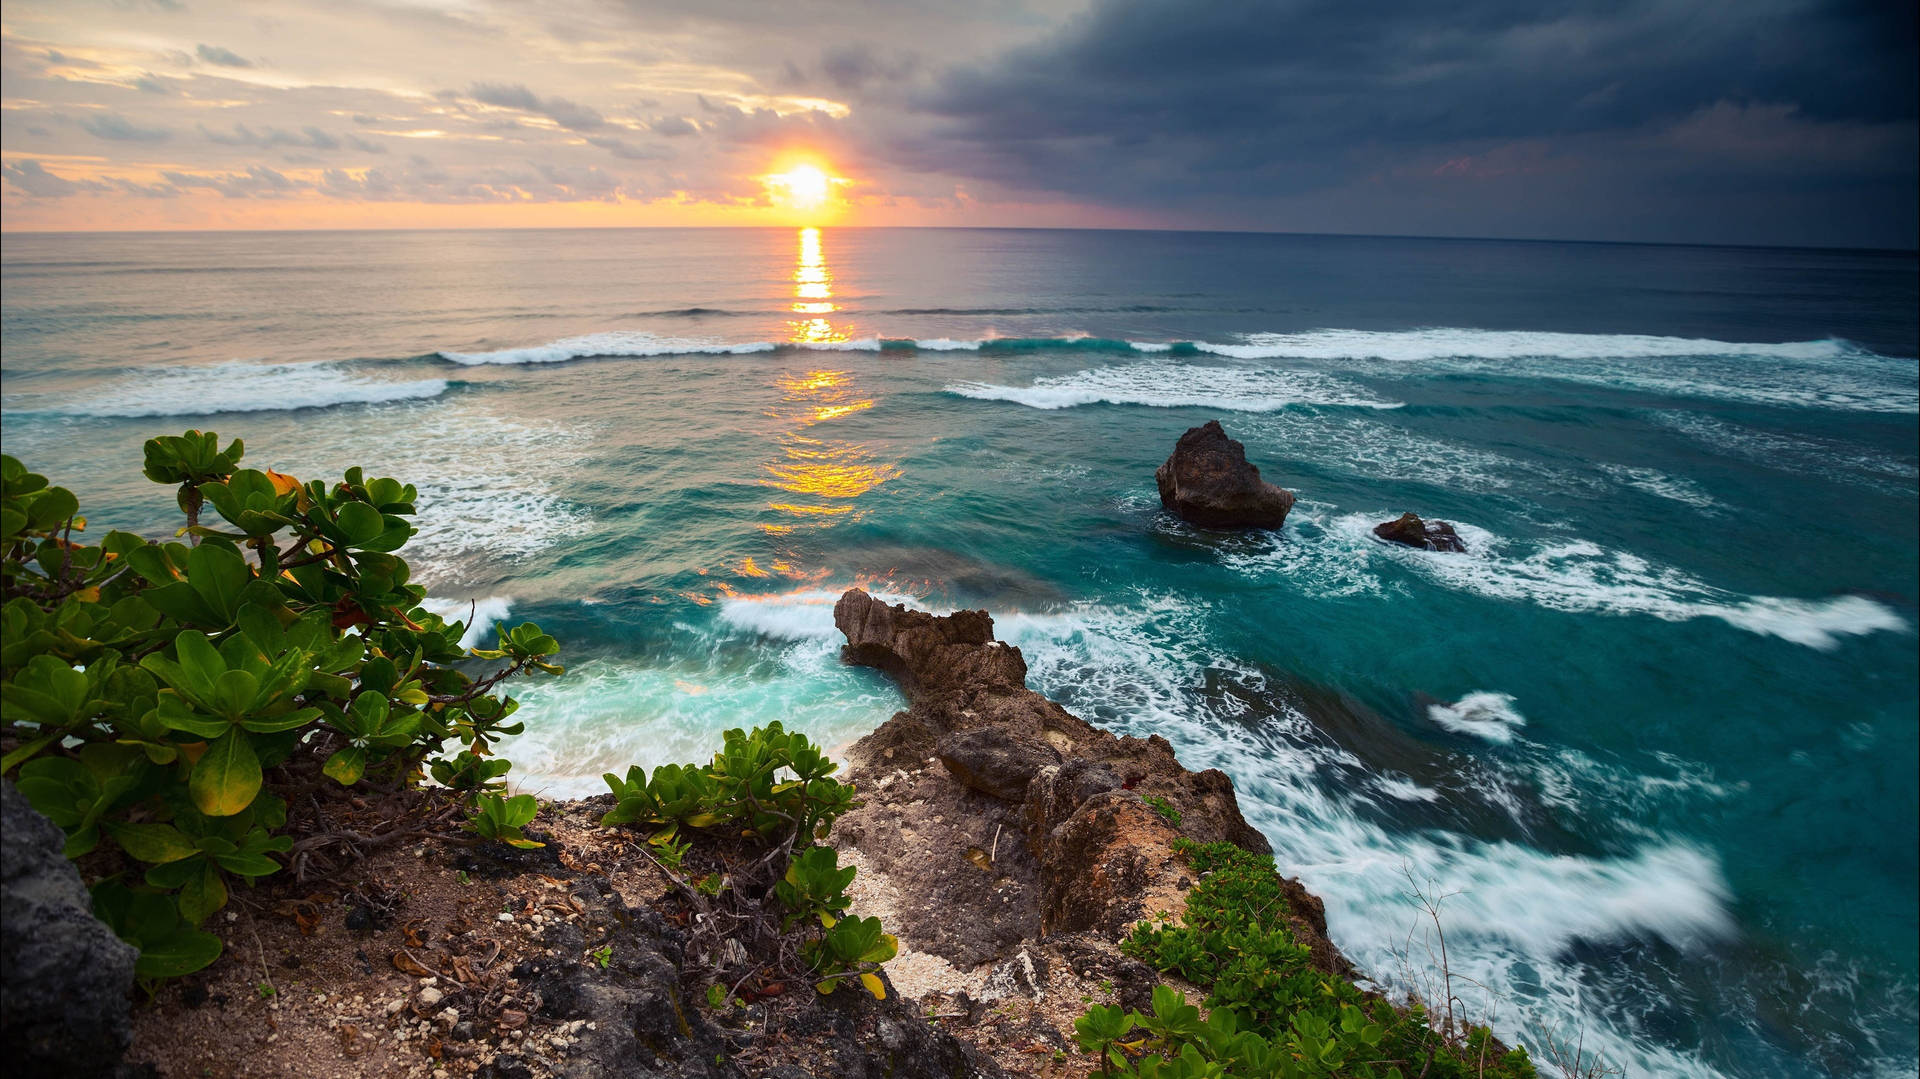 Chasing Sunsets At Bali Island